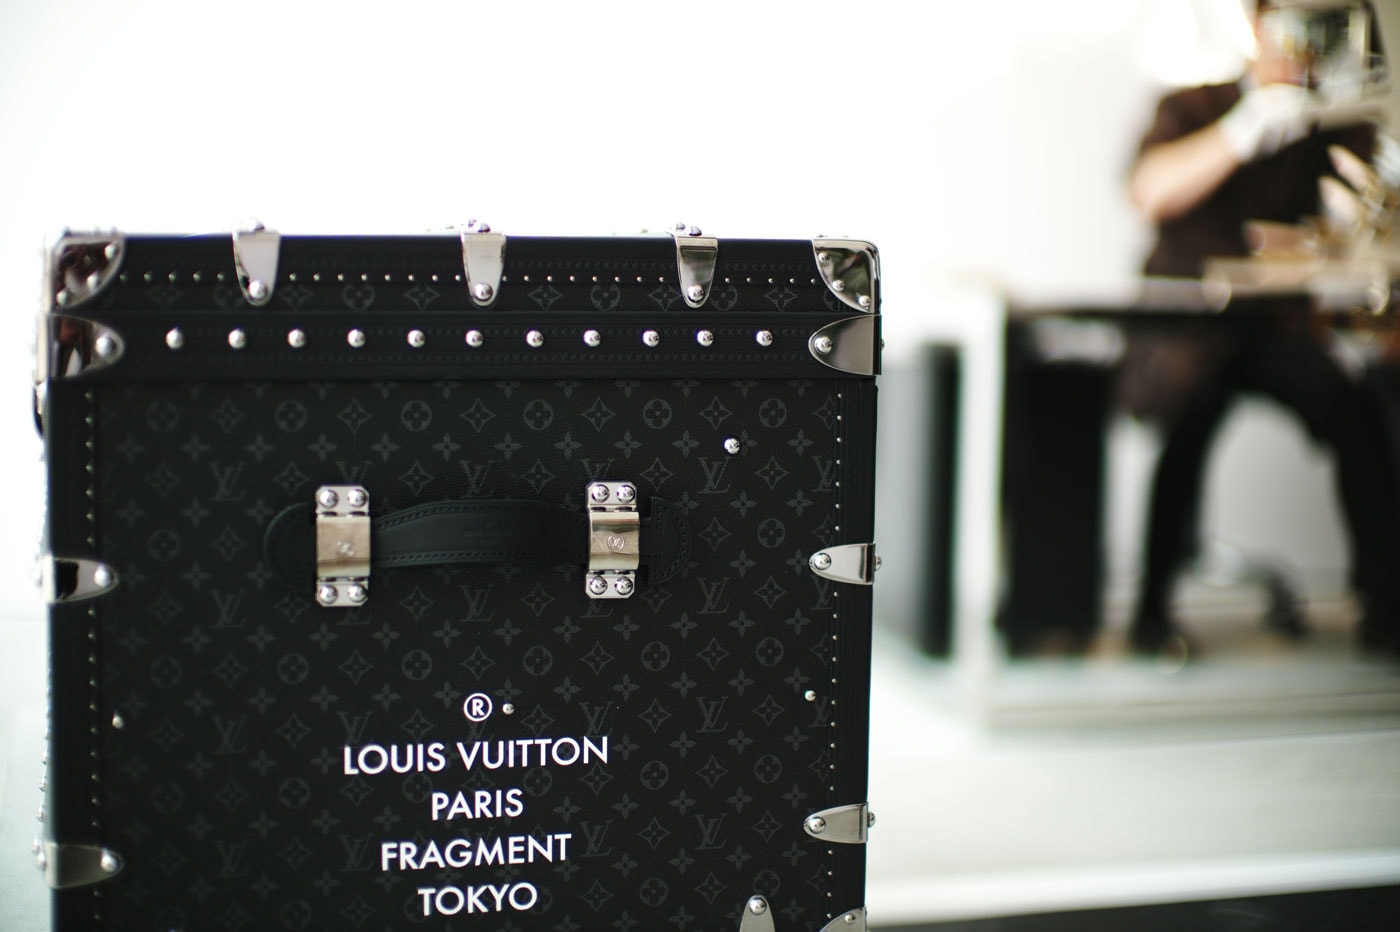 Fragment Design x Louis Vuitton Merchandise Being Resold Online